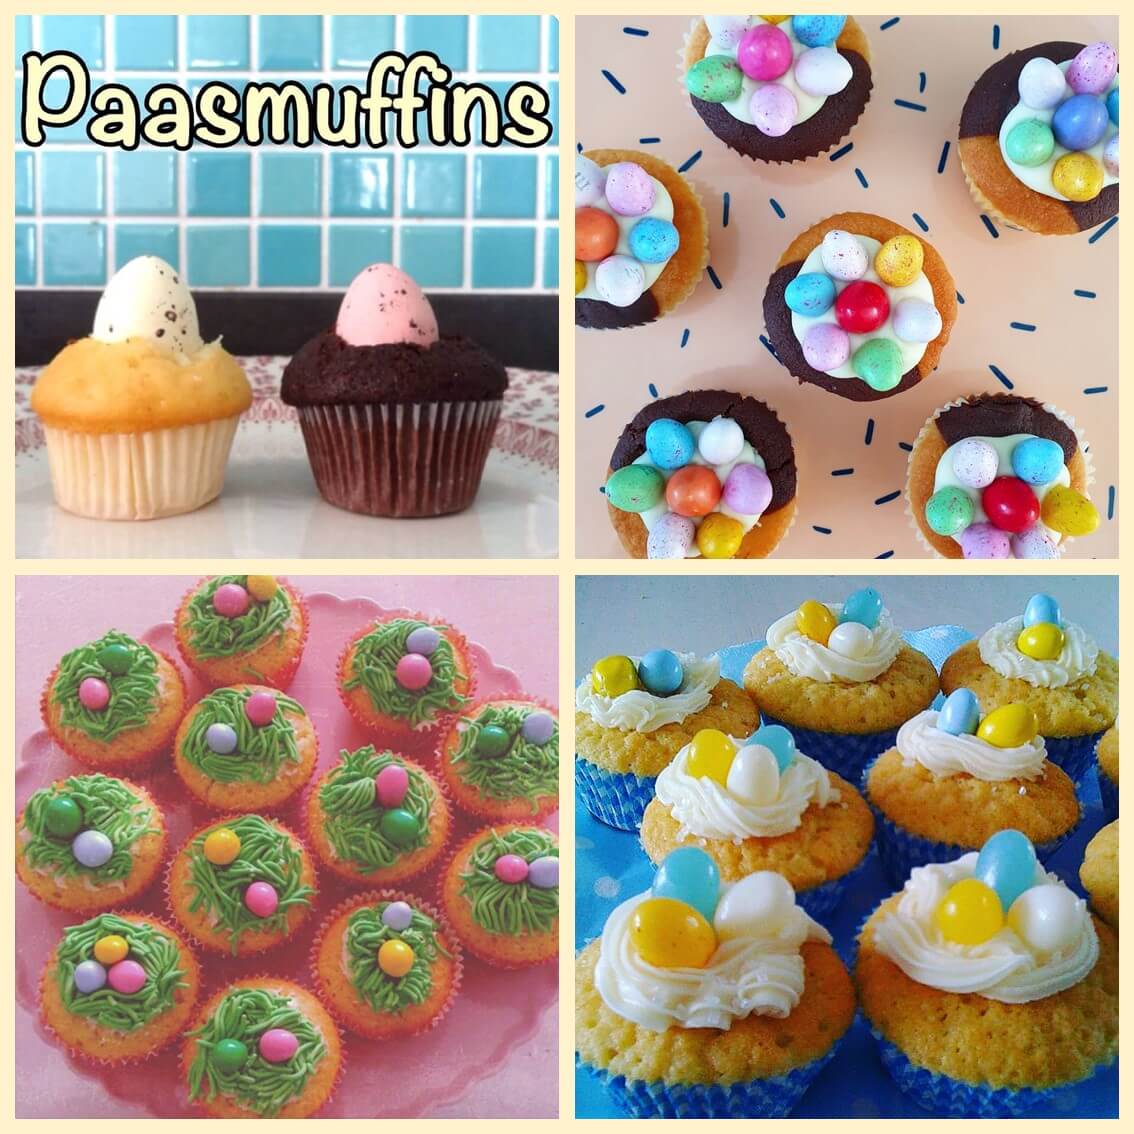 tij Uitsluiten Onvervangbaar Paastraktatie: snelle muffins en cupcakes maken voor Pasen Leuk met kids